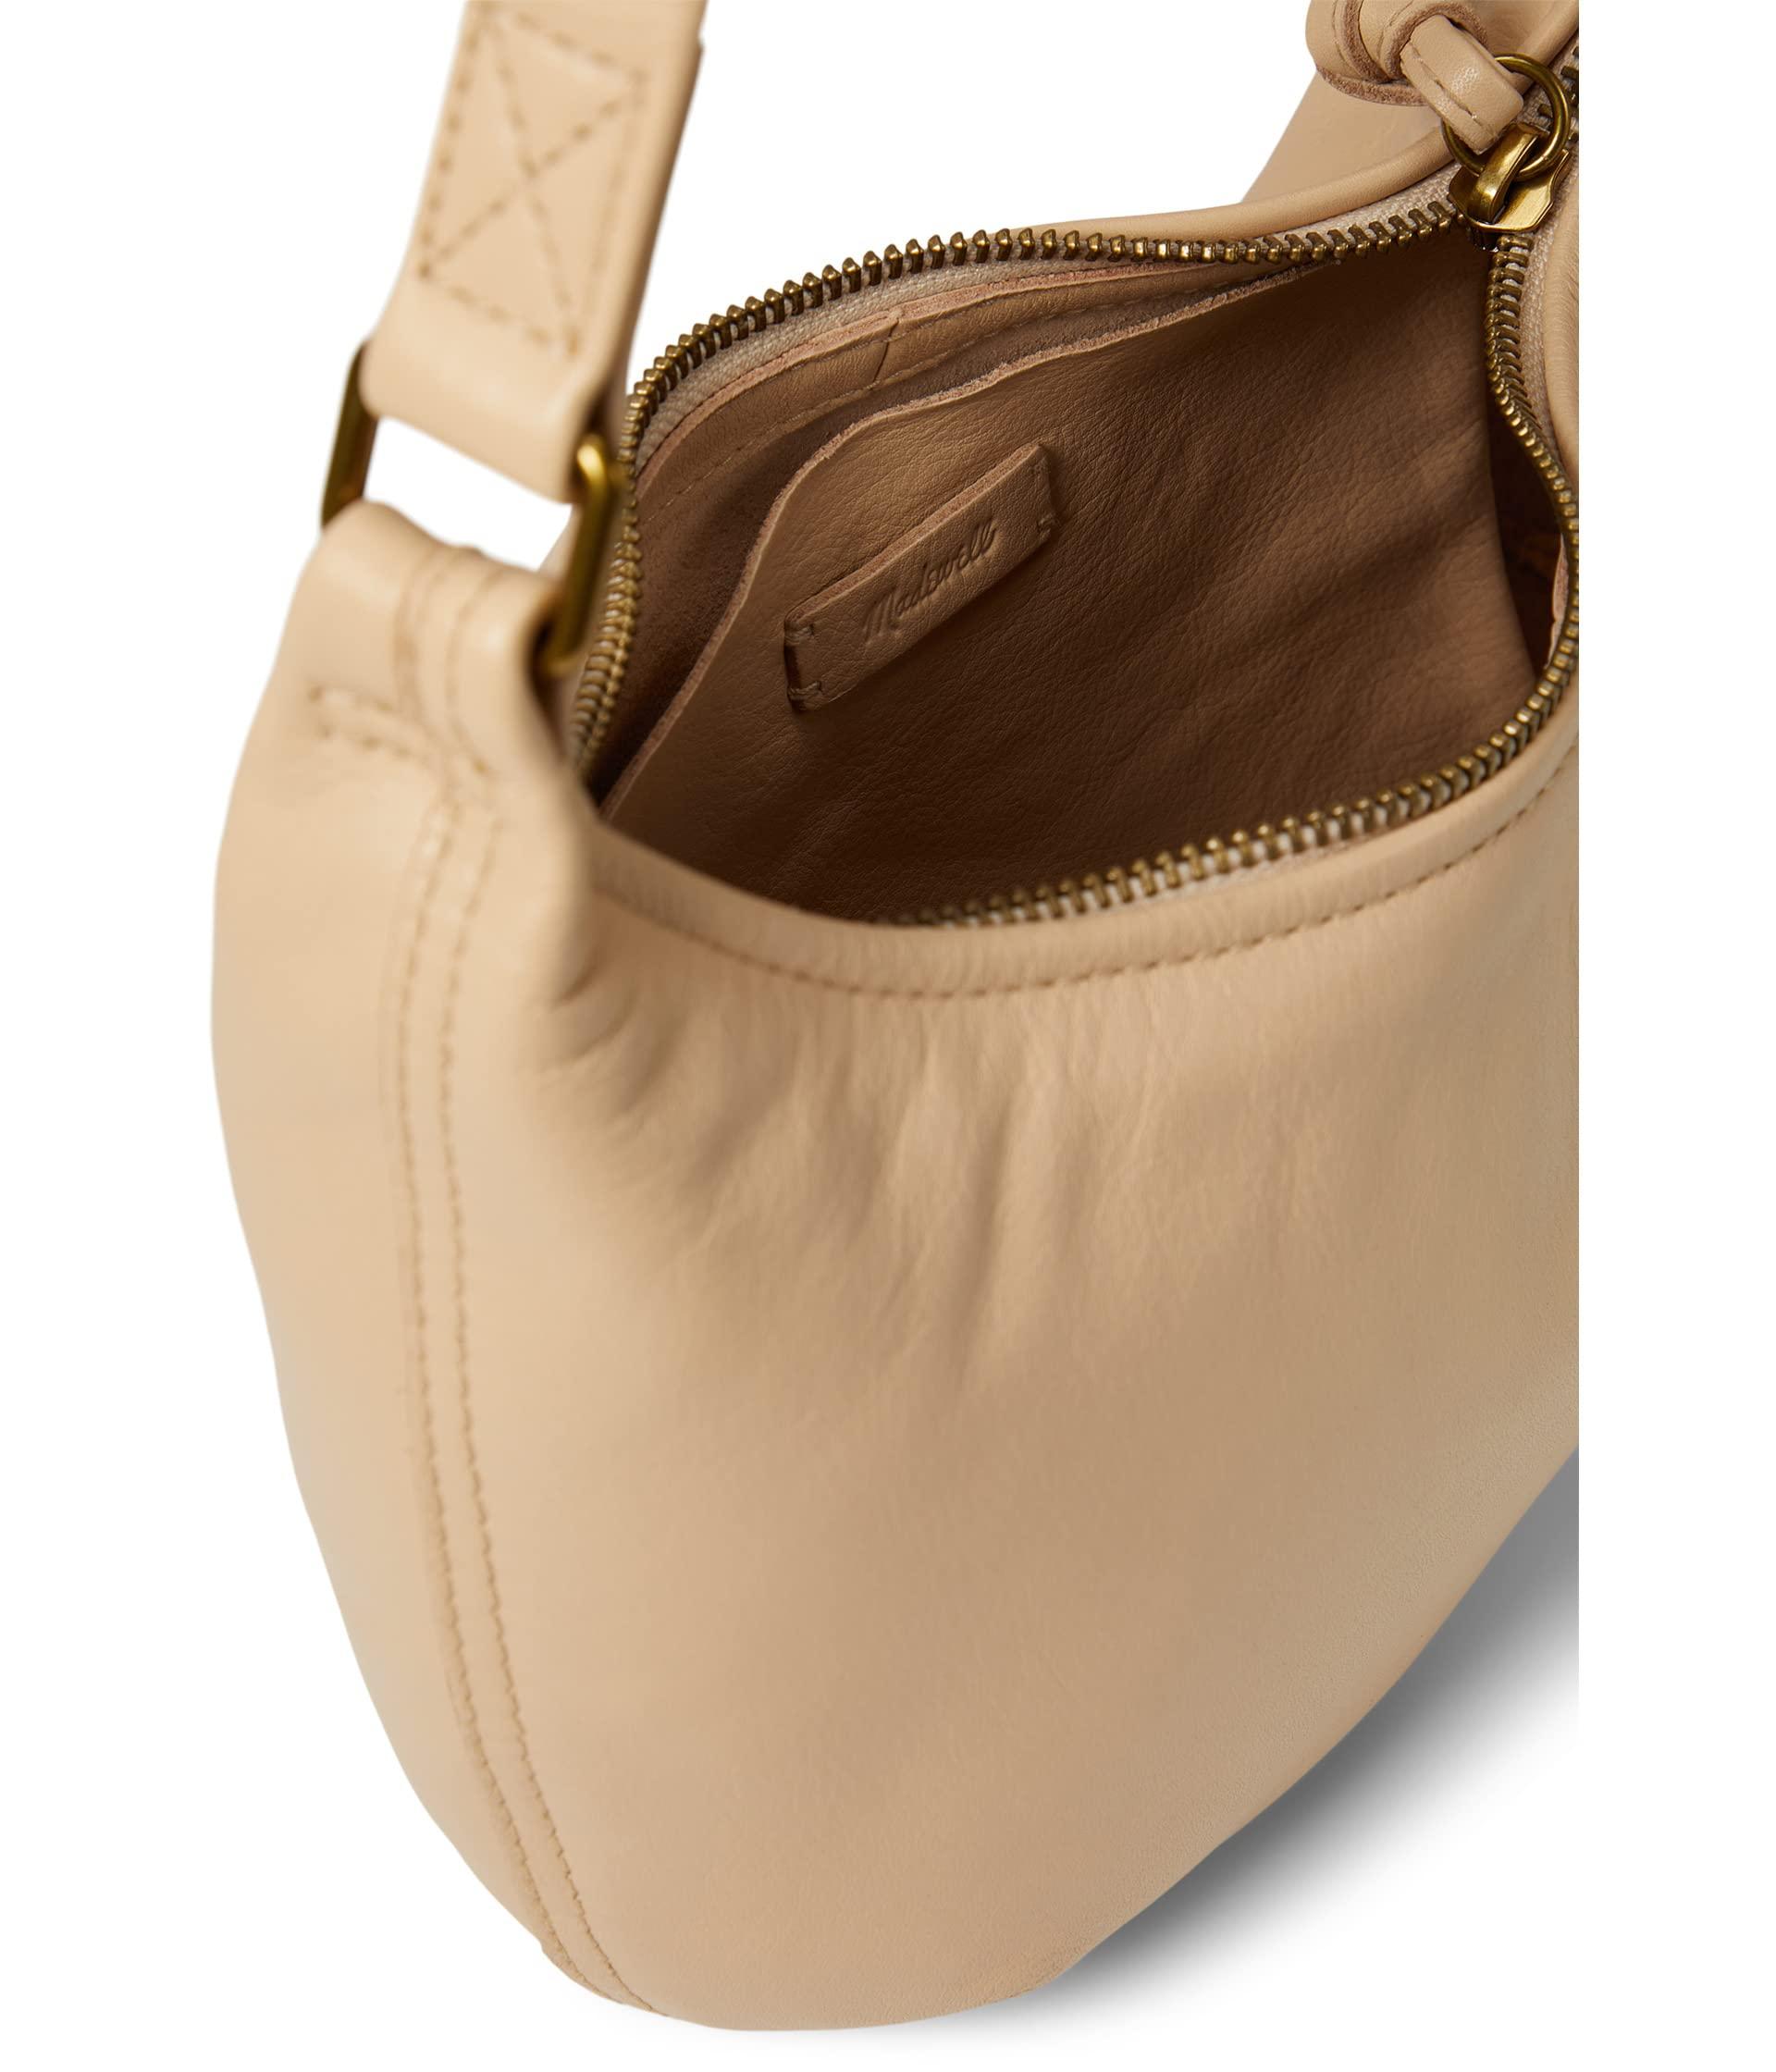 Madewell Soft Small Hobo Bag